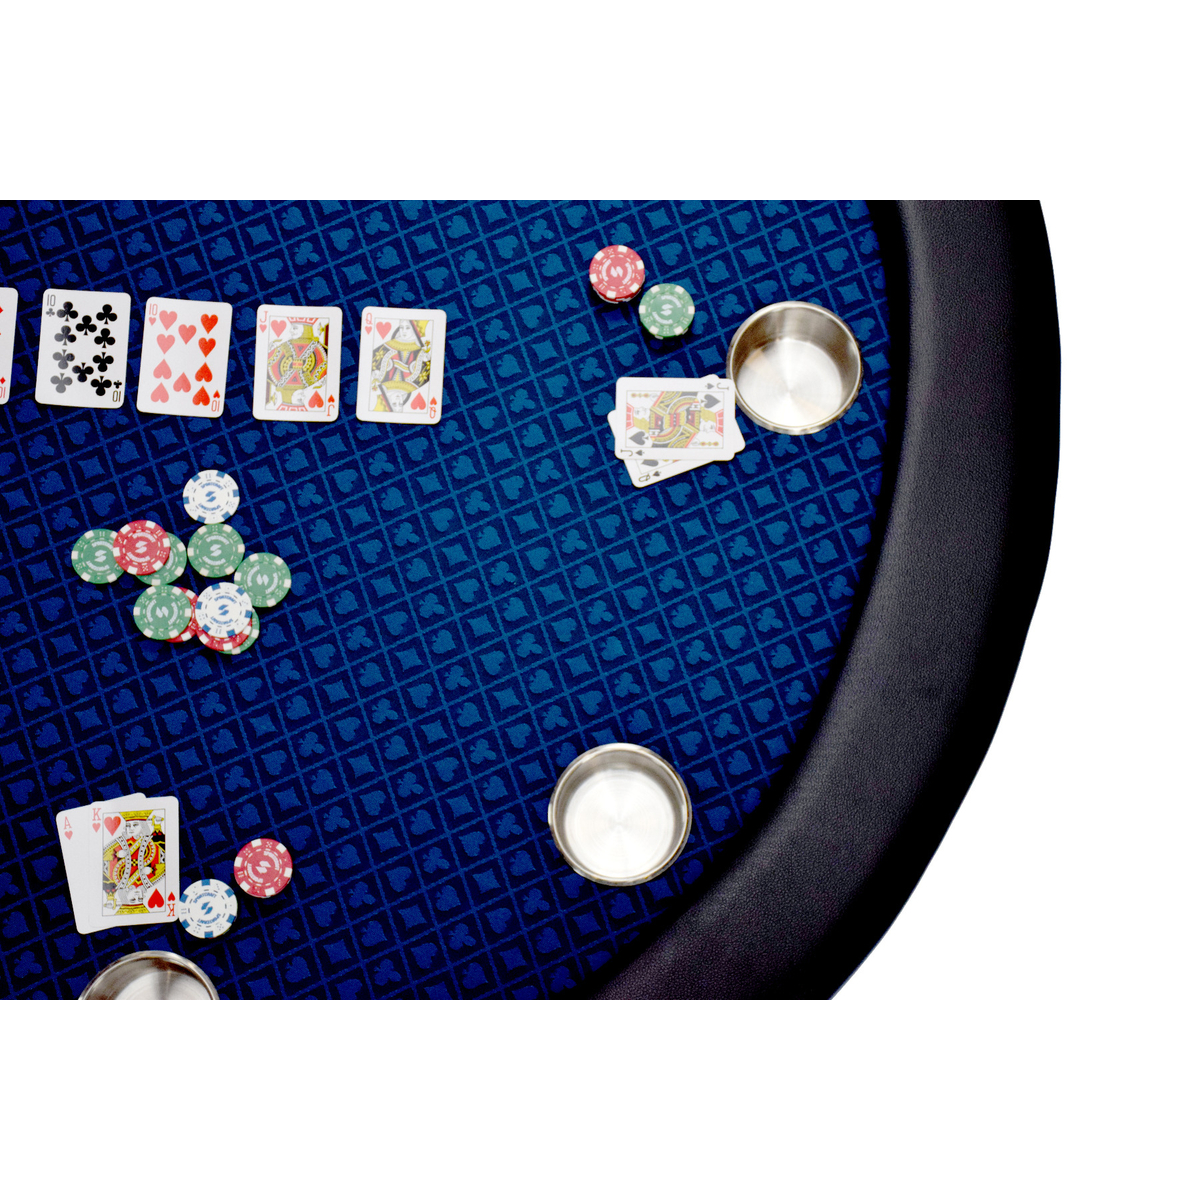 North Ronde Pokertafel Texas 8 Personen Blauw